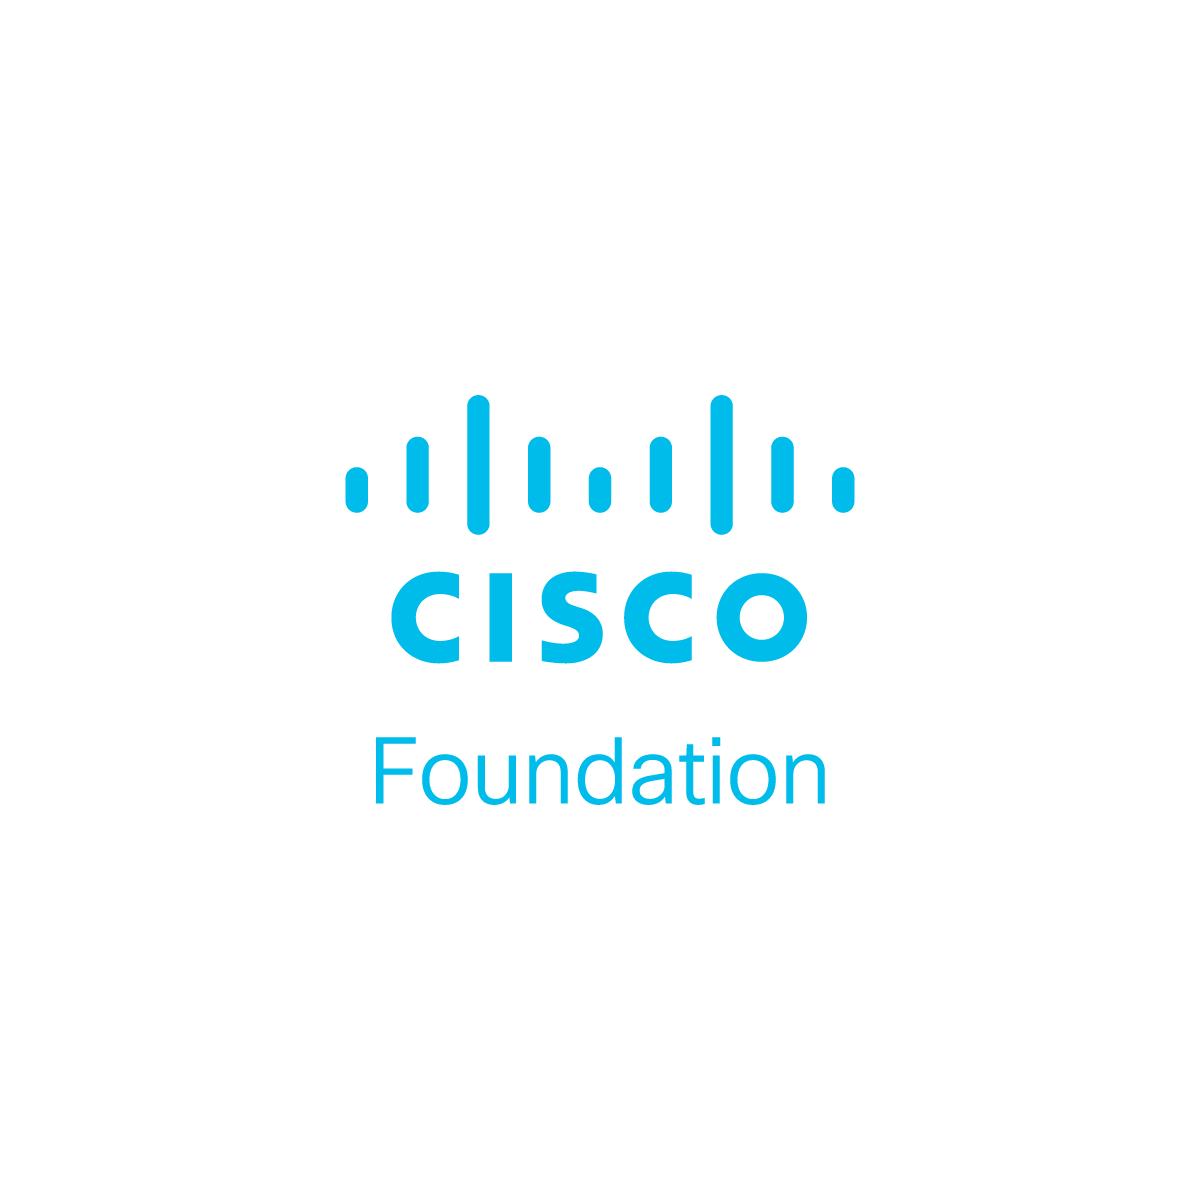 Cisco_Foundation_RGB_Sky_Blue.png